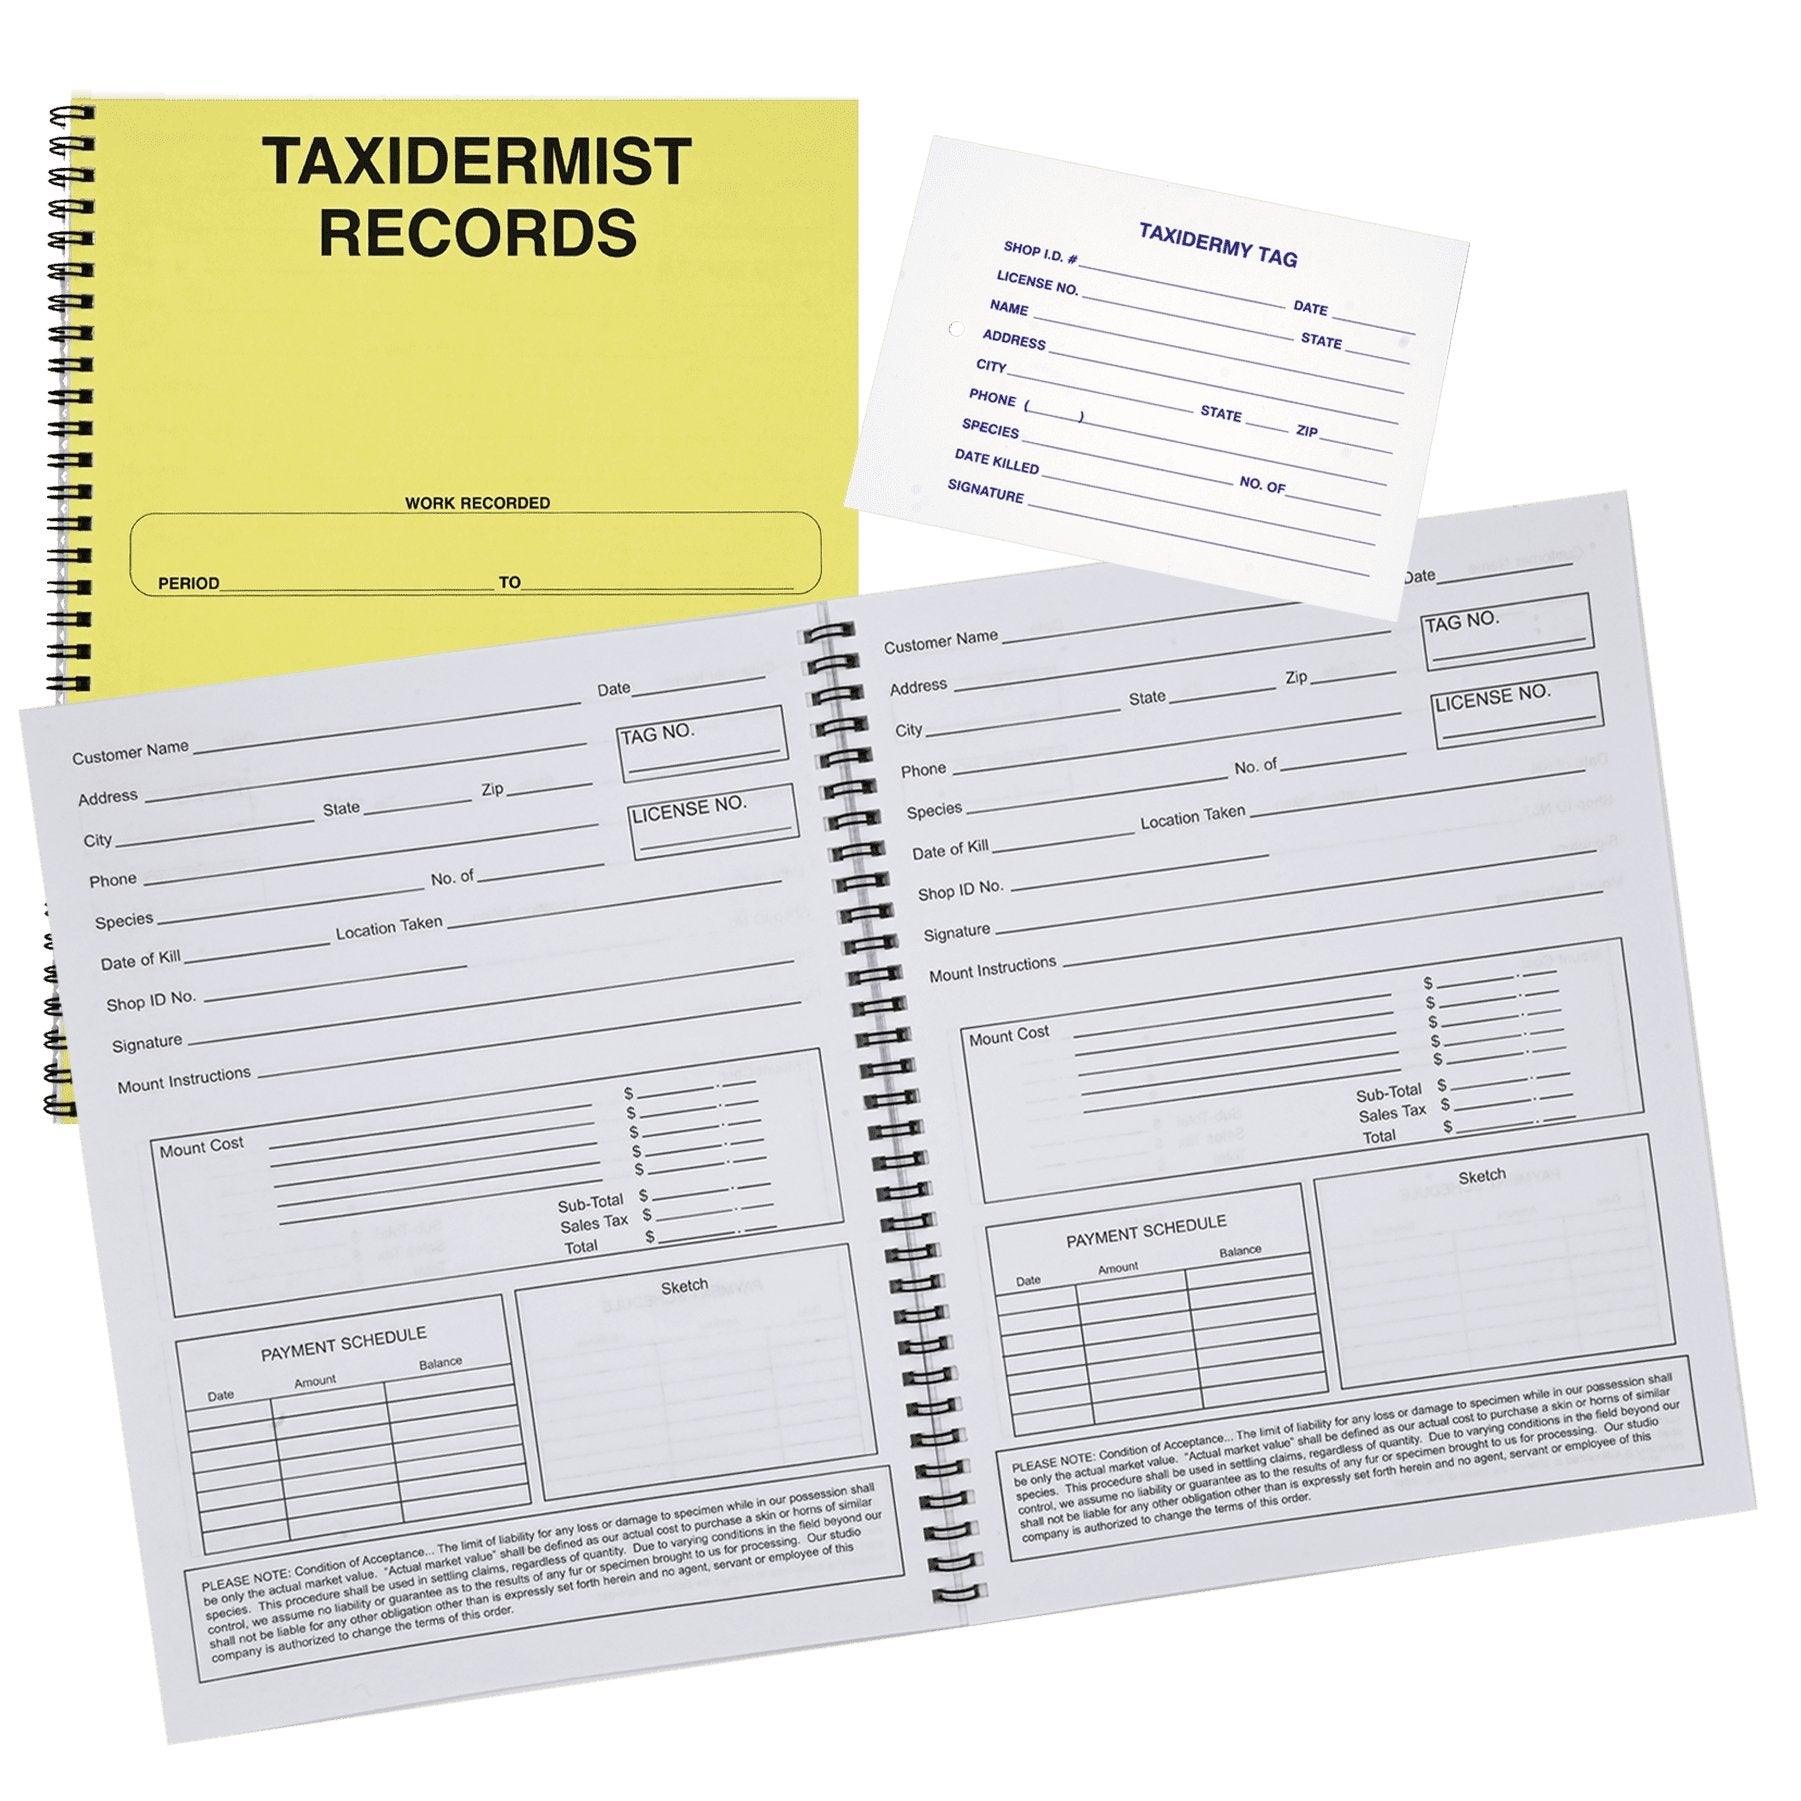 Record Keeping System - Matuska Taxidermy Supply Company